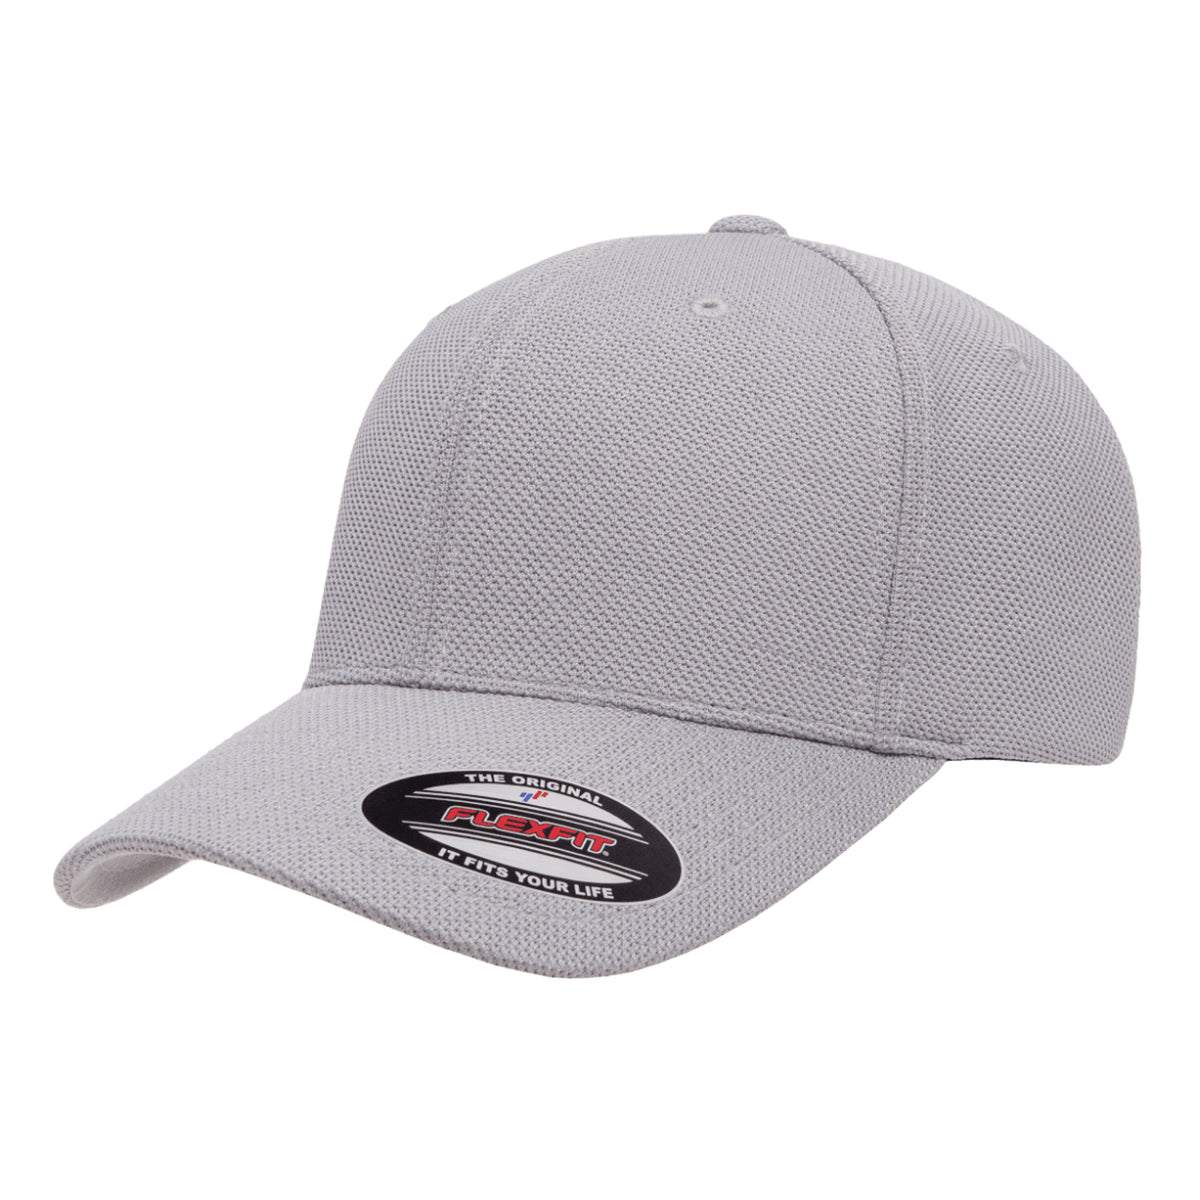 Mesh Caps, Flexfit – Wholesale Billed | Dry Dry Cool Cool & Flat Pique Caps Flexfit 2040USA Flexfit & Yupoong